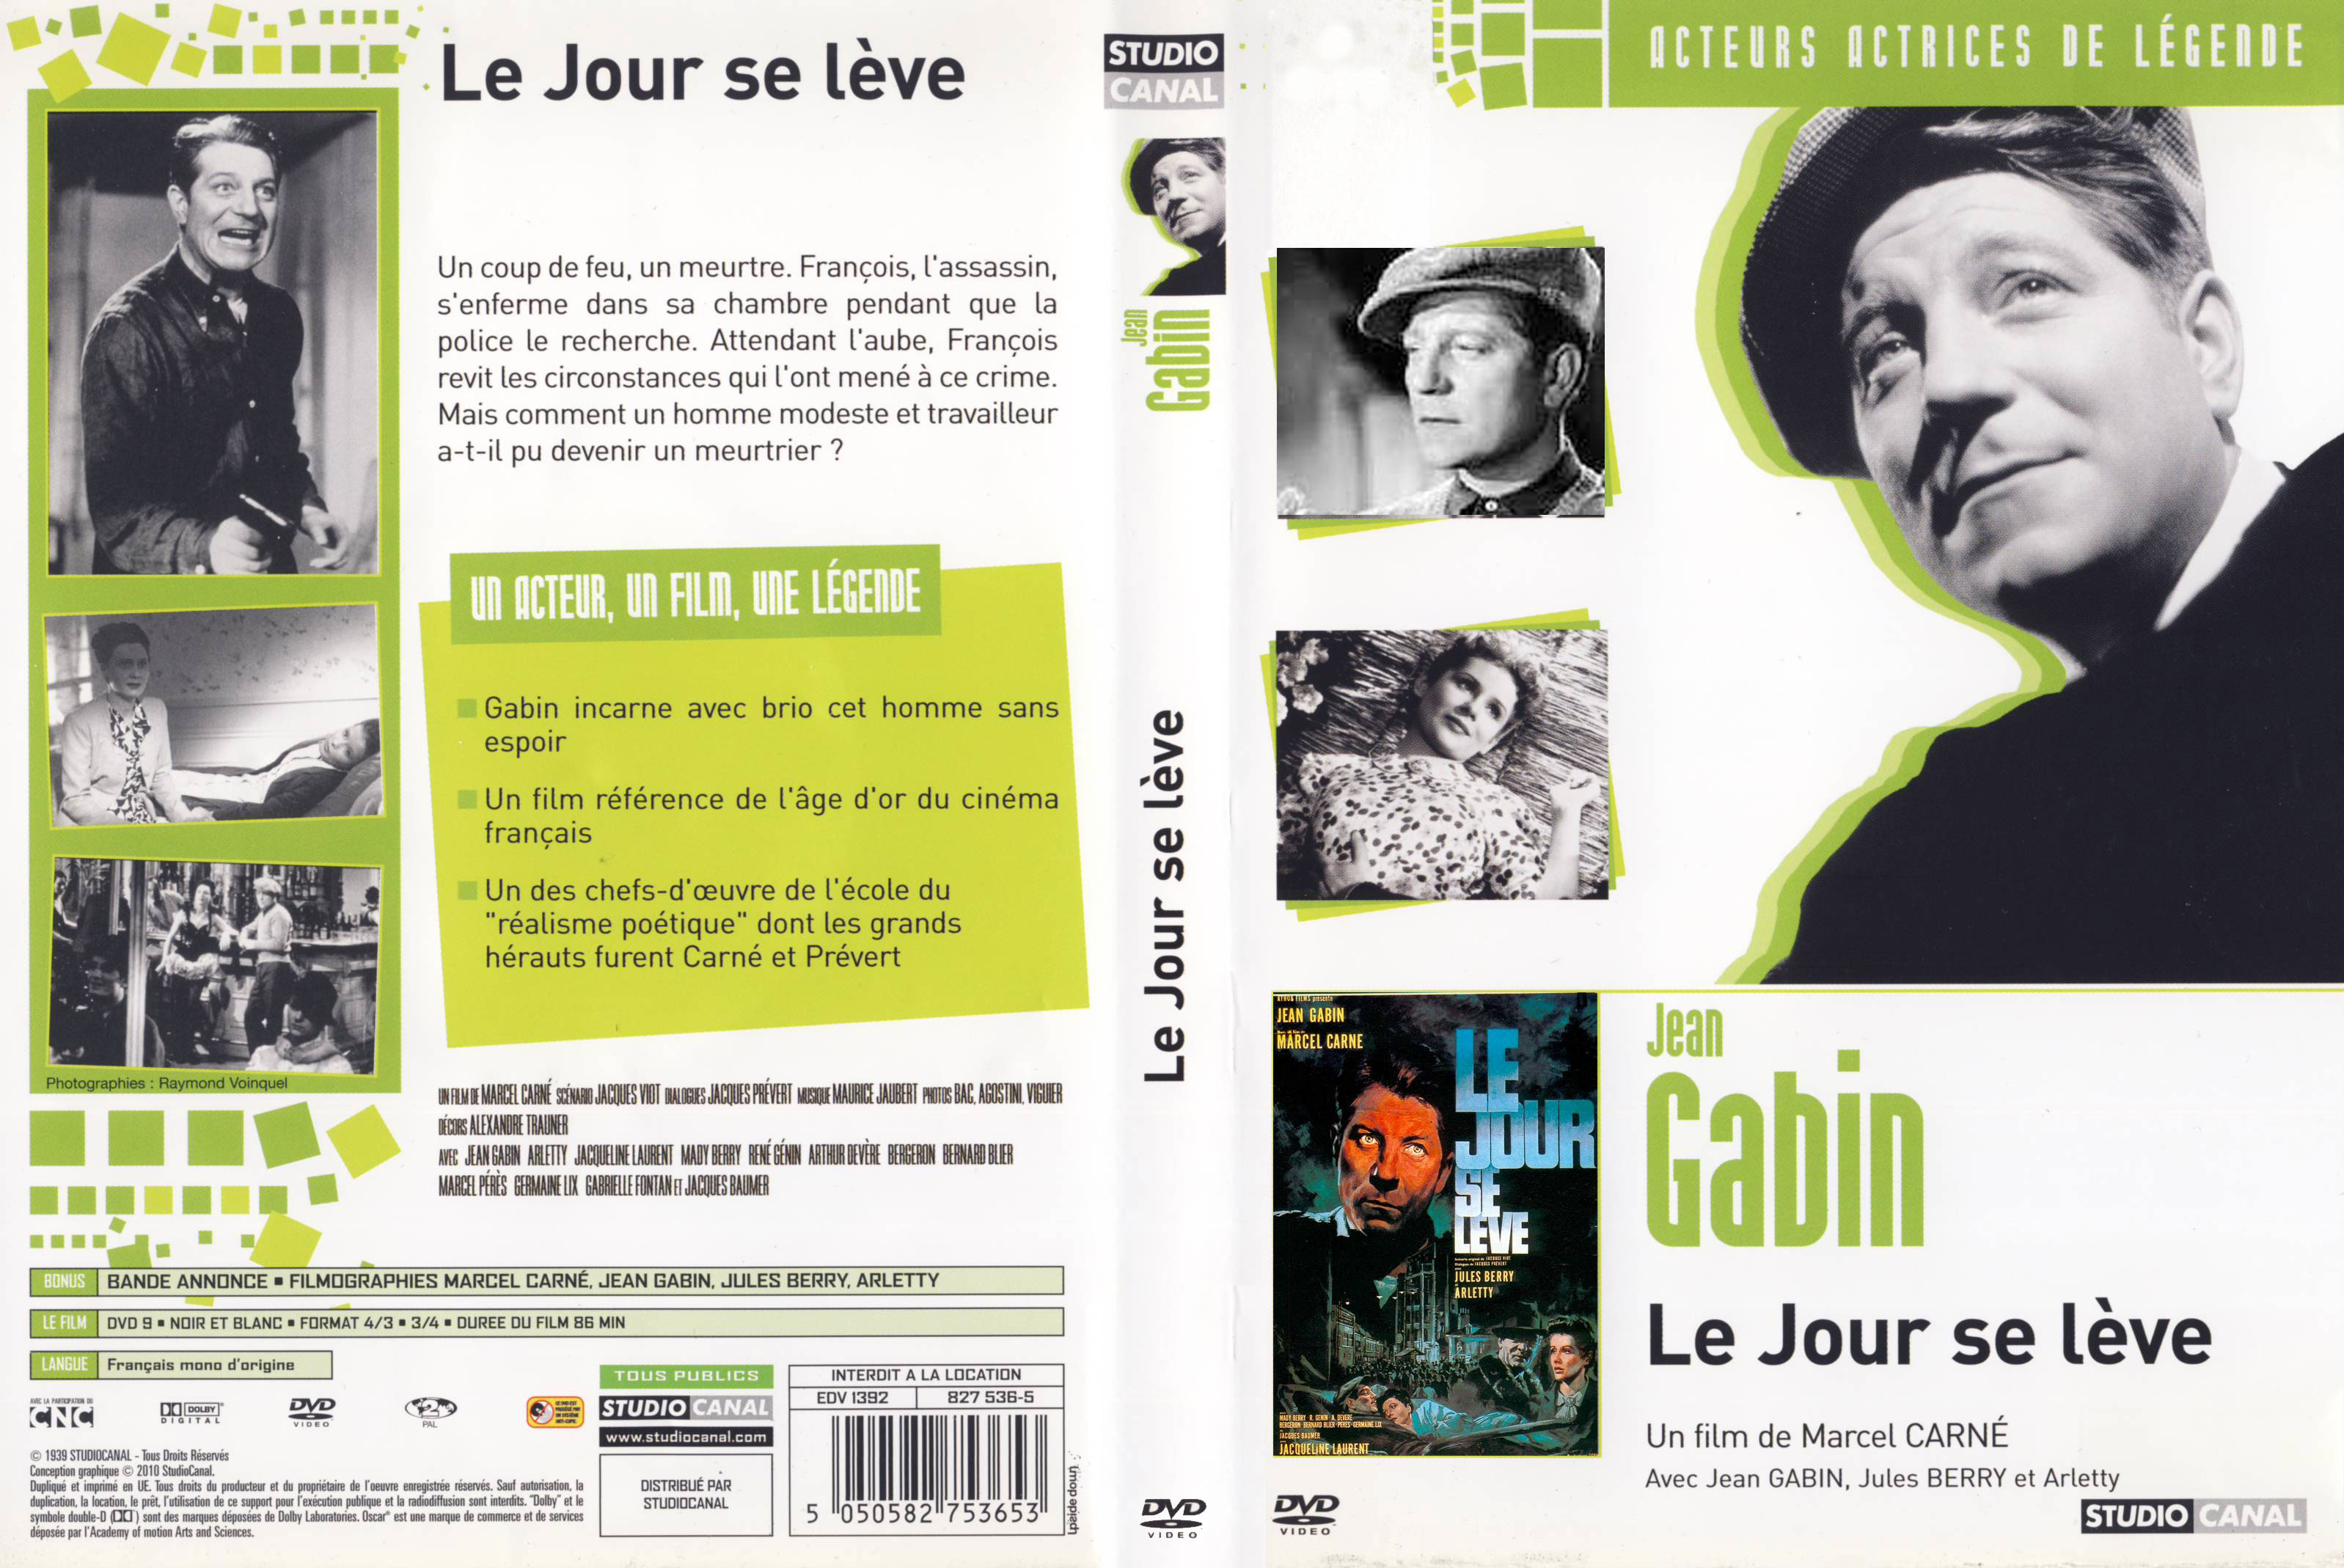 Jaquette DVD Le Jour se lve v3